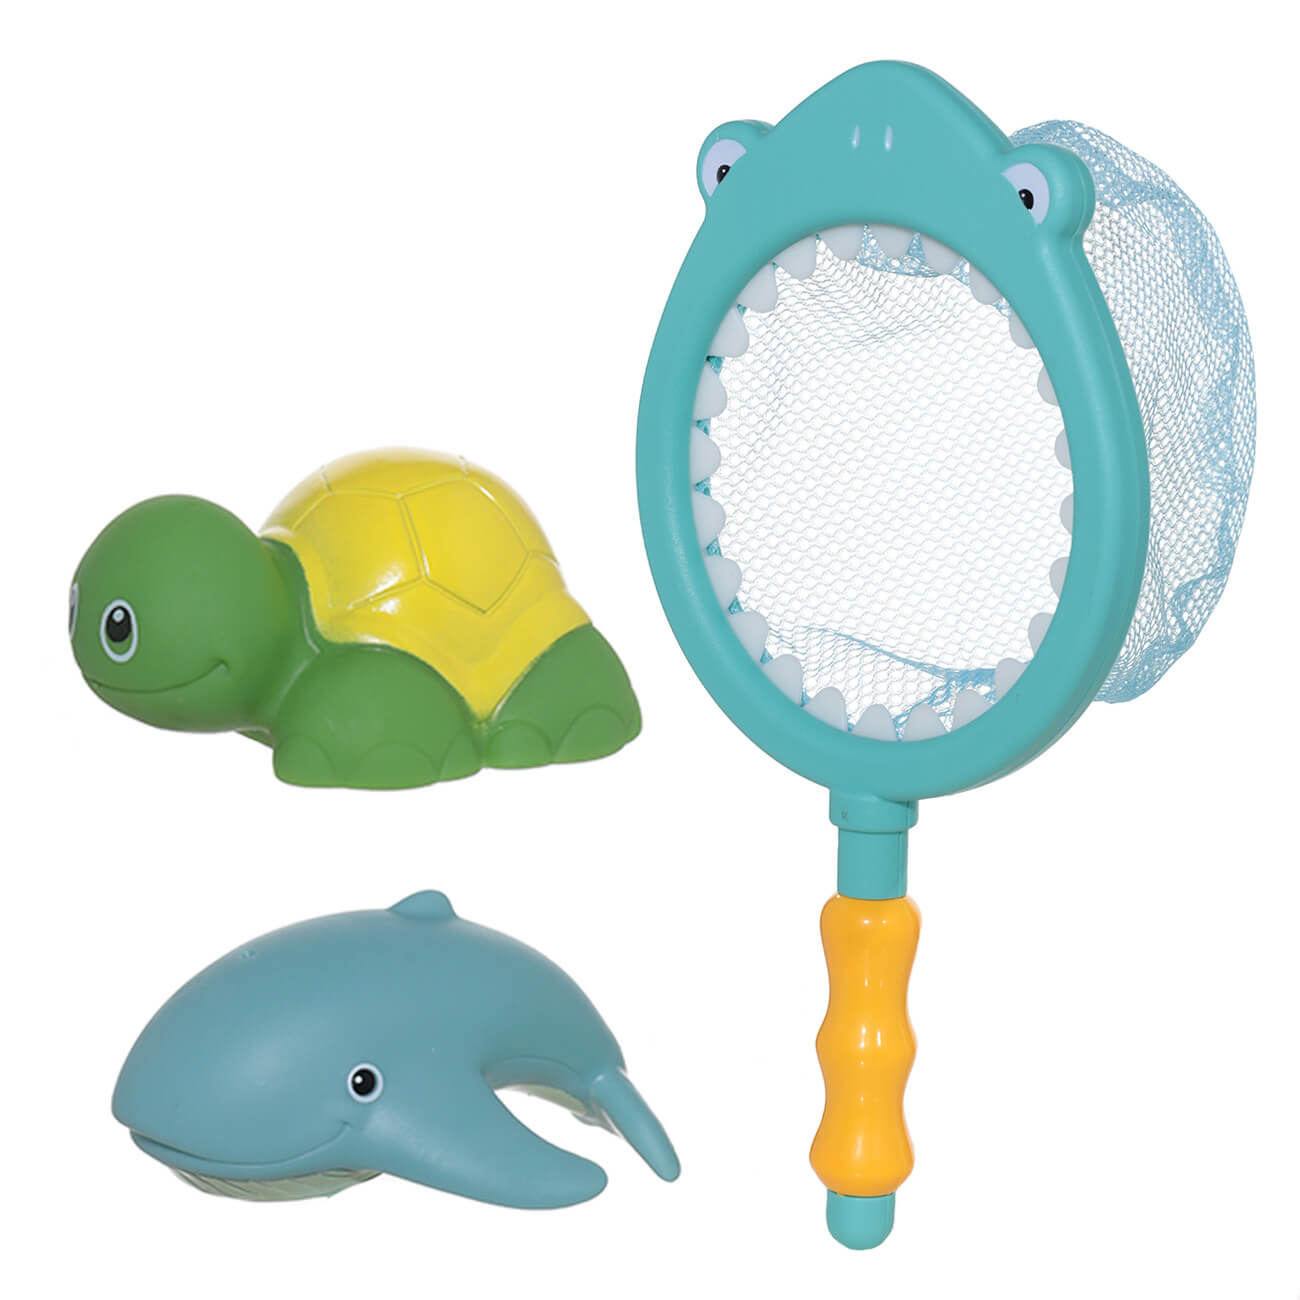 Набор игрушек для купания, 3 пр, сачок/игрушки, резина/пластик, Акула, Aquatic animals набор игрушек для ванной купания